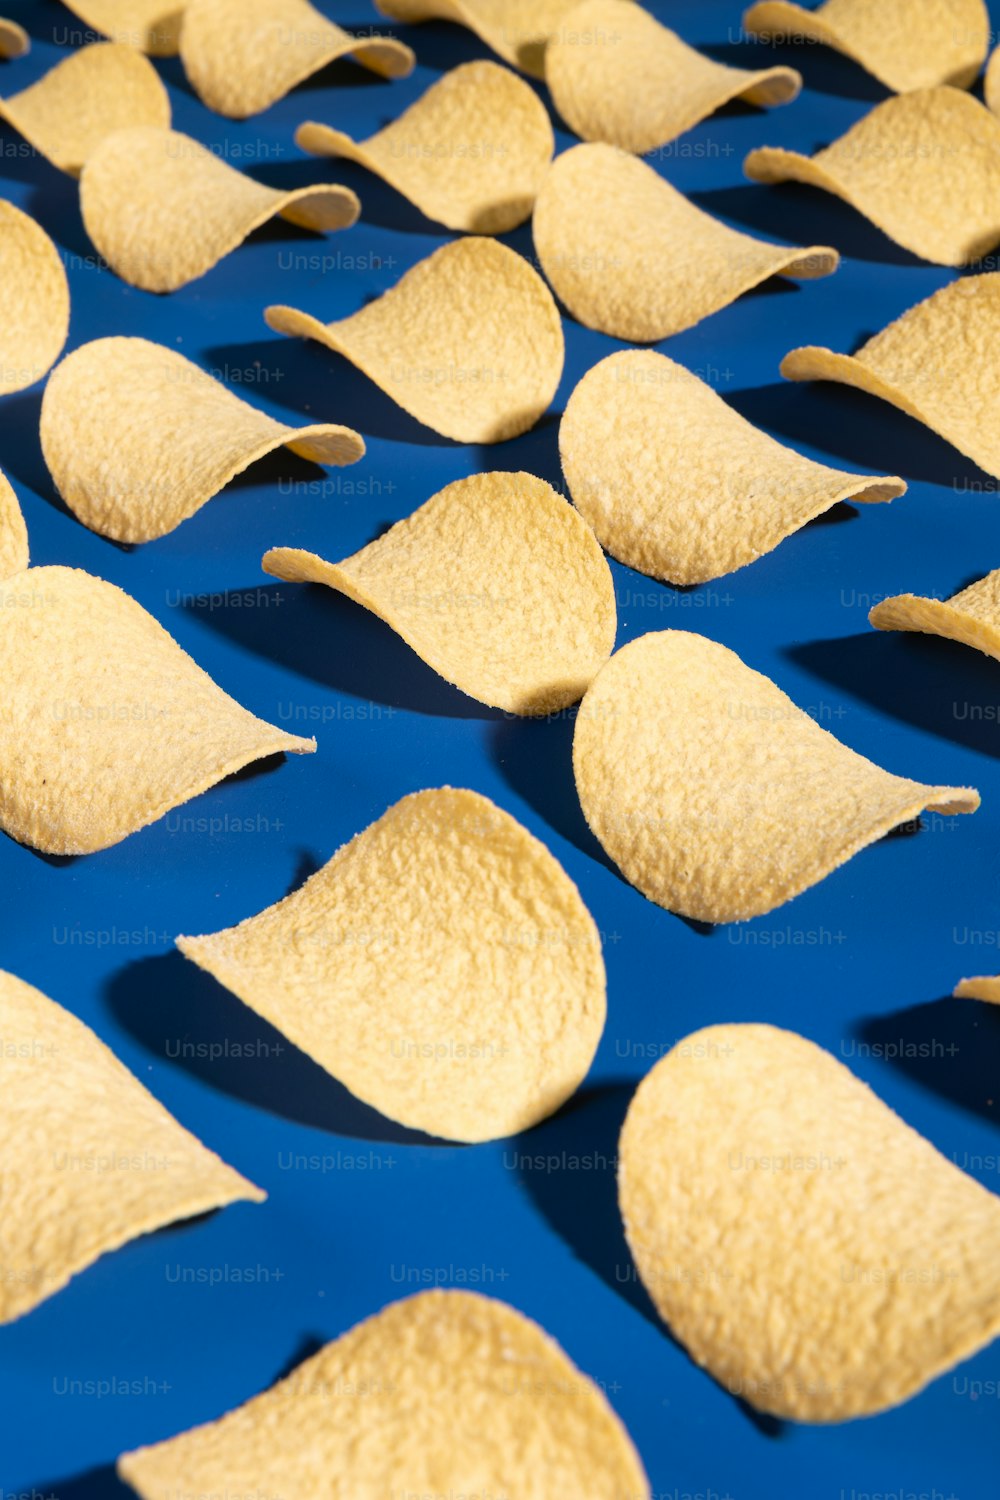 Les croustilles de tortilla sont disposées sur une surface bleue